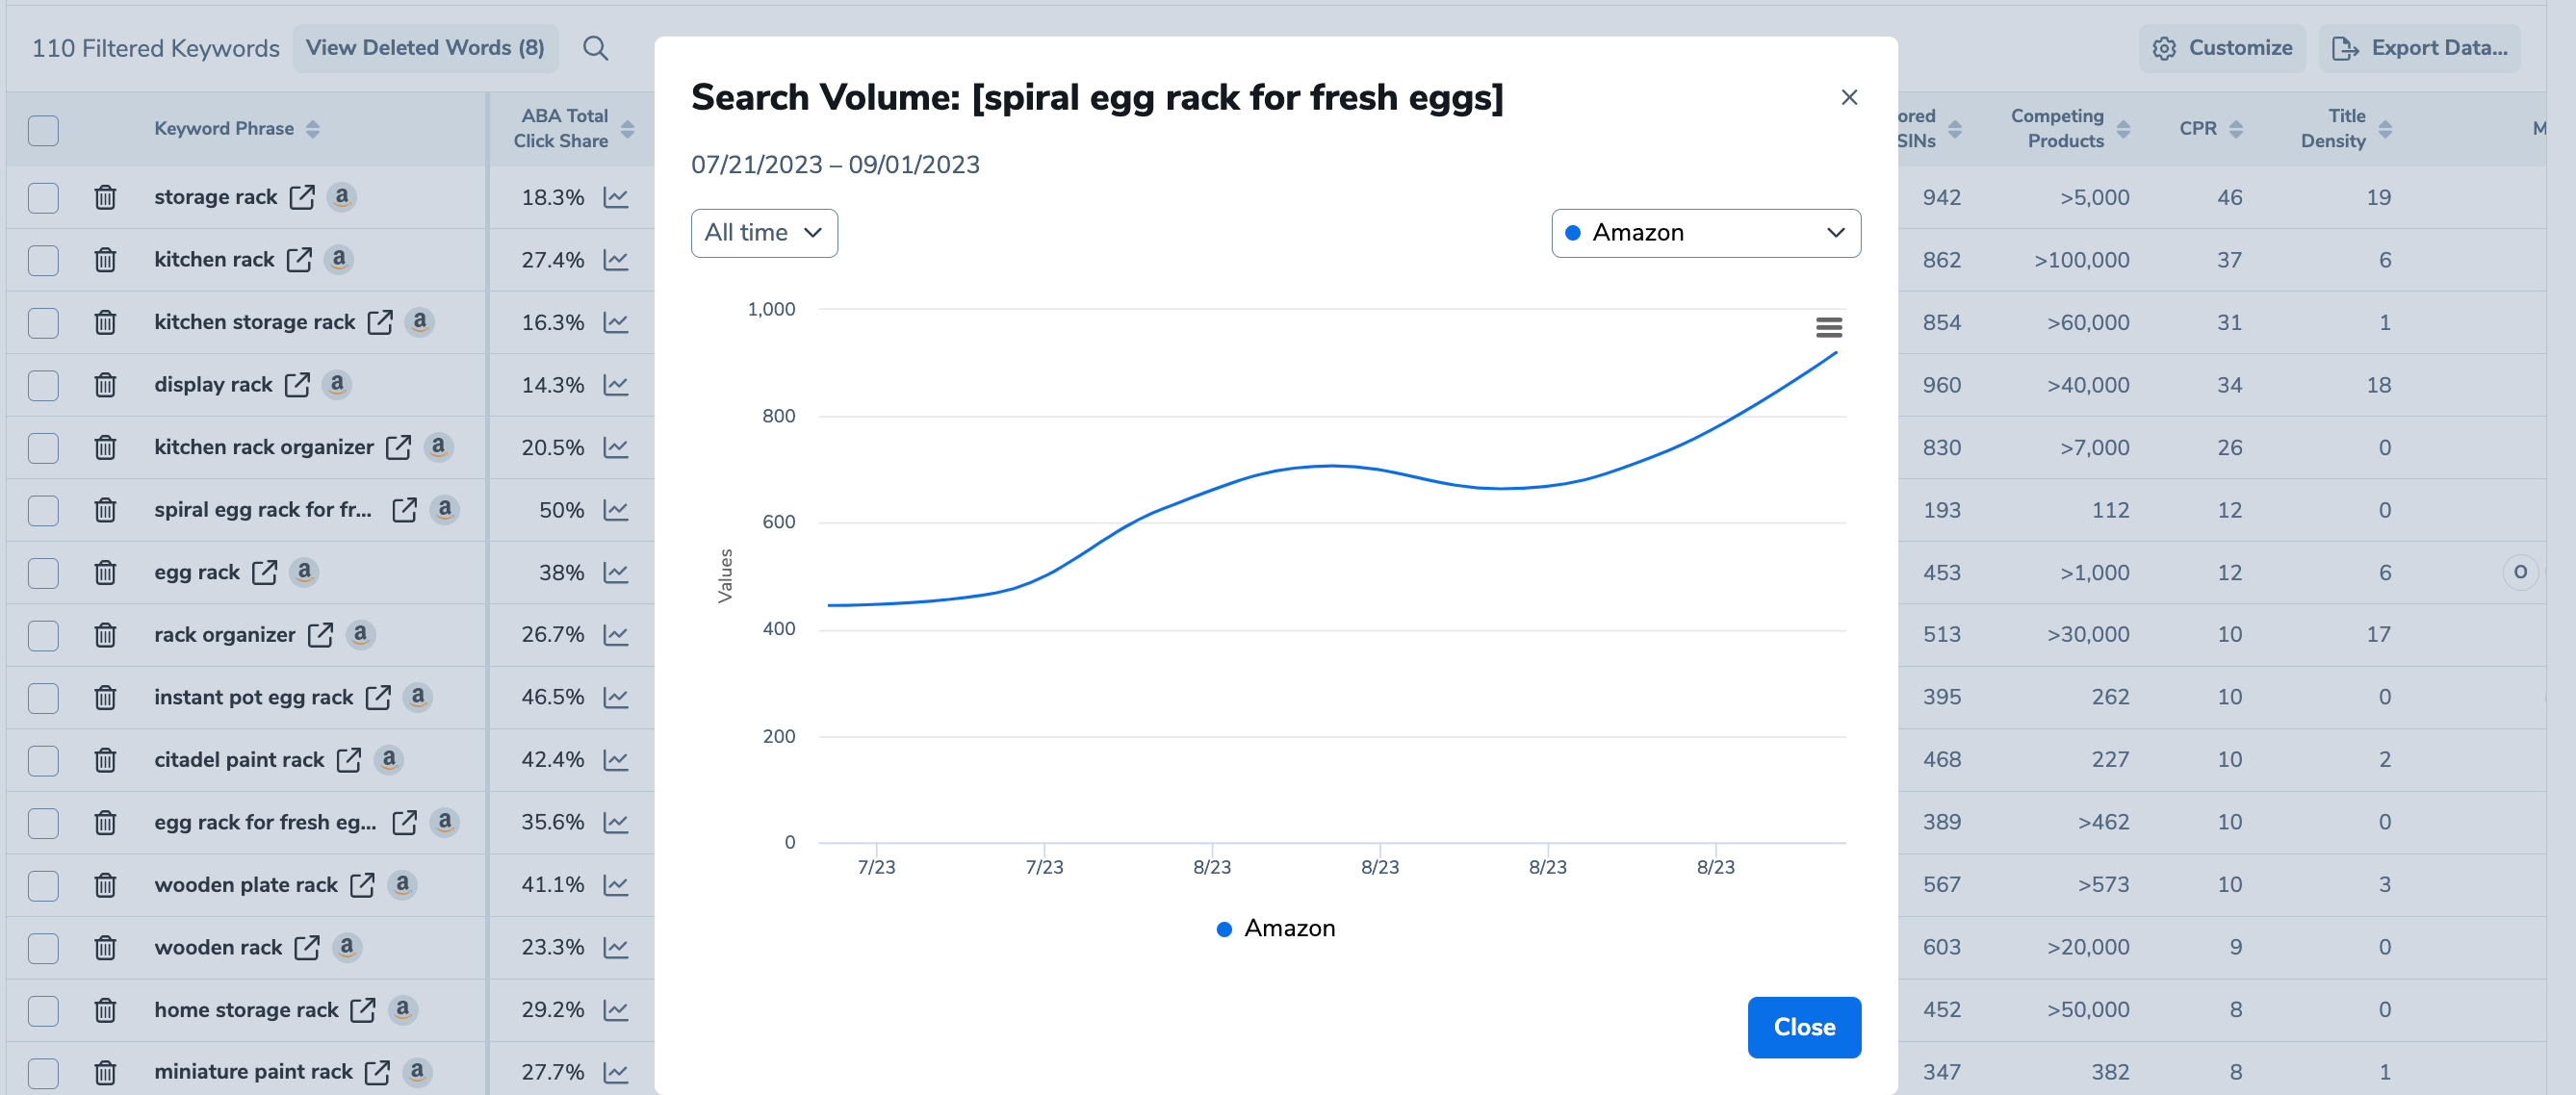 search volume for spiral egg rack for fresh eggs